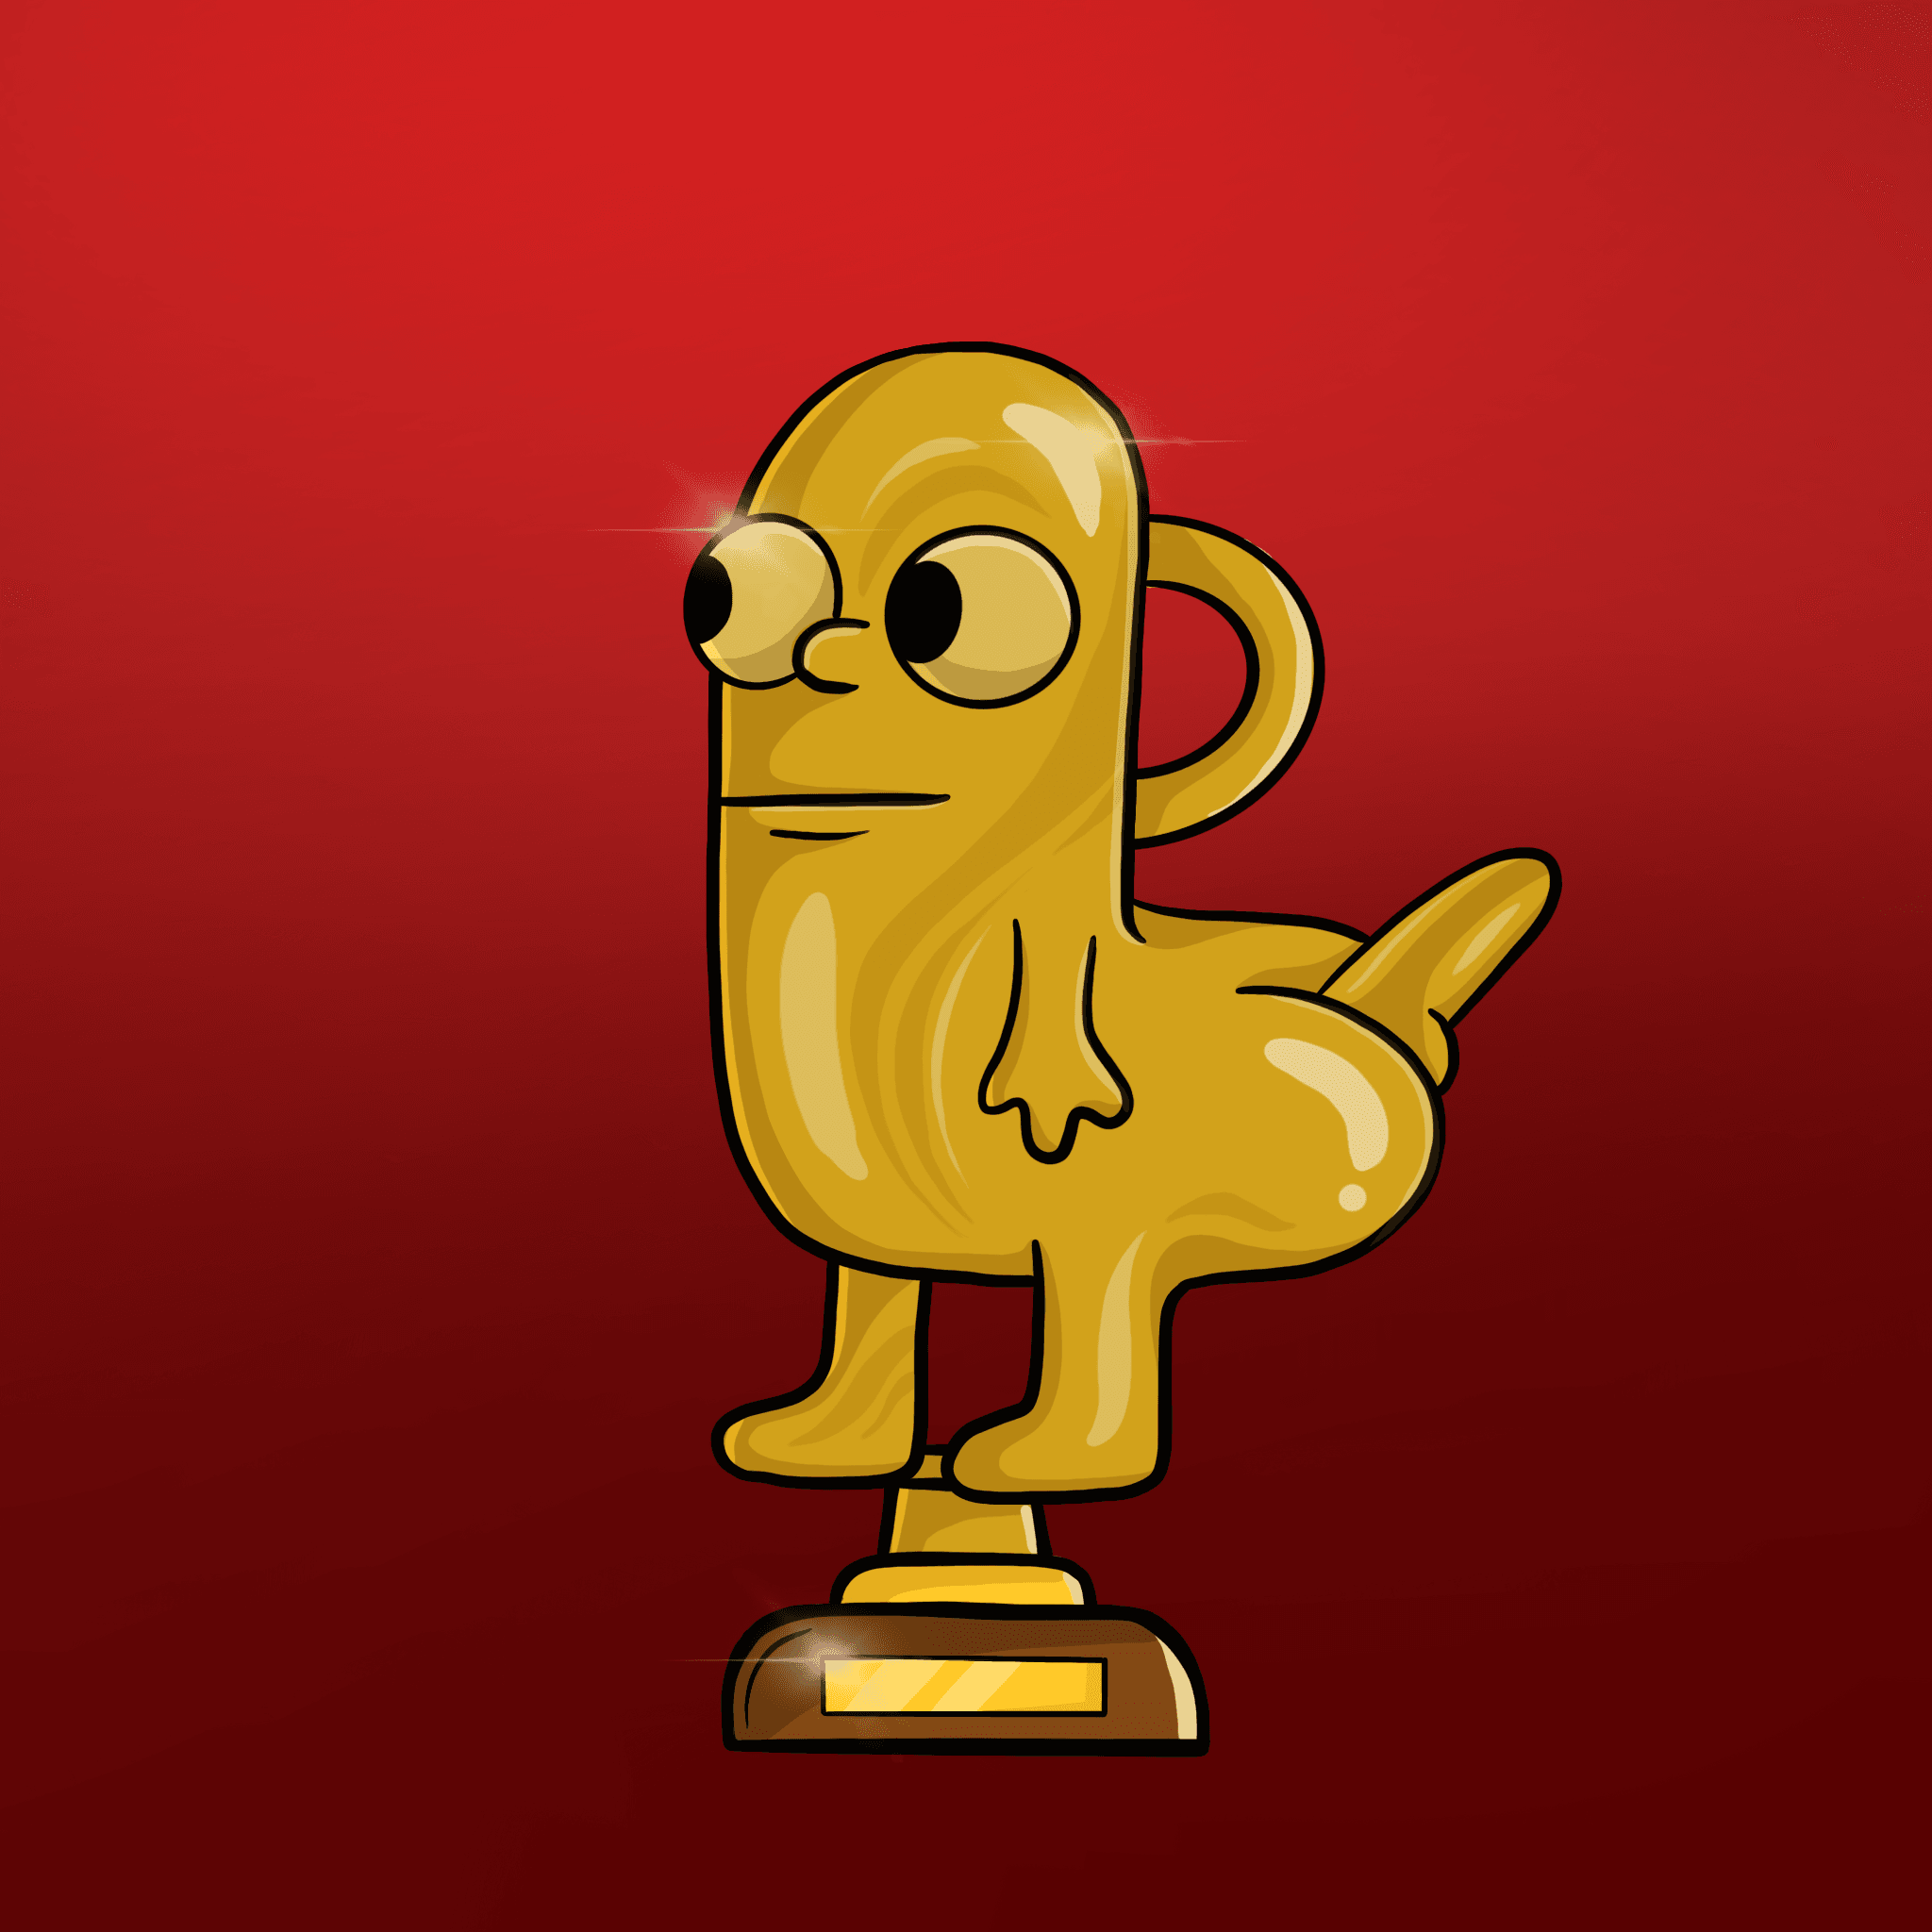 CryptoDickbutt Award 2021